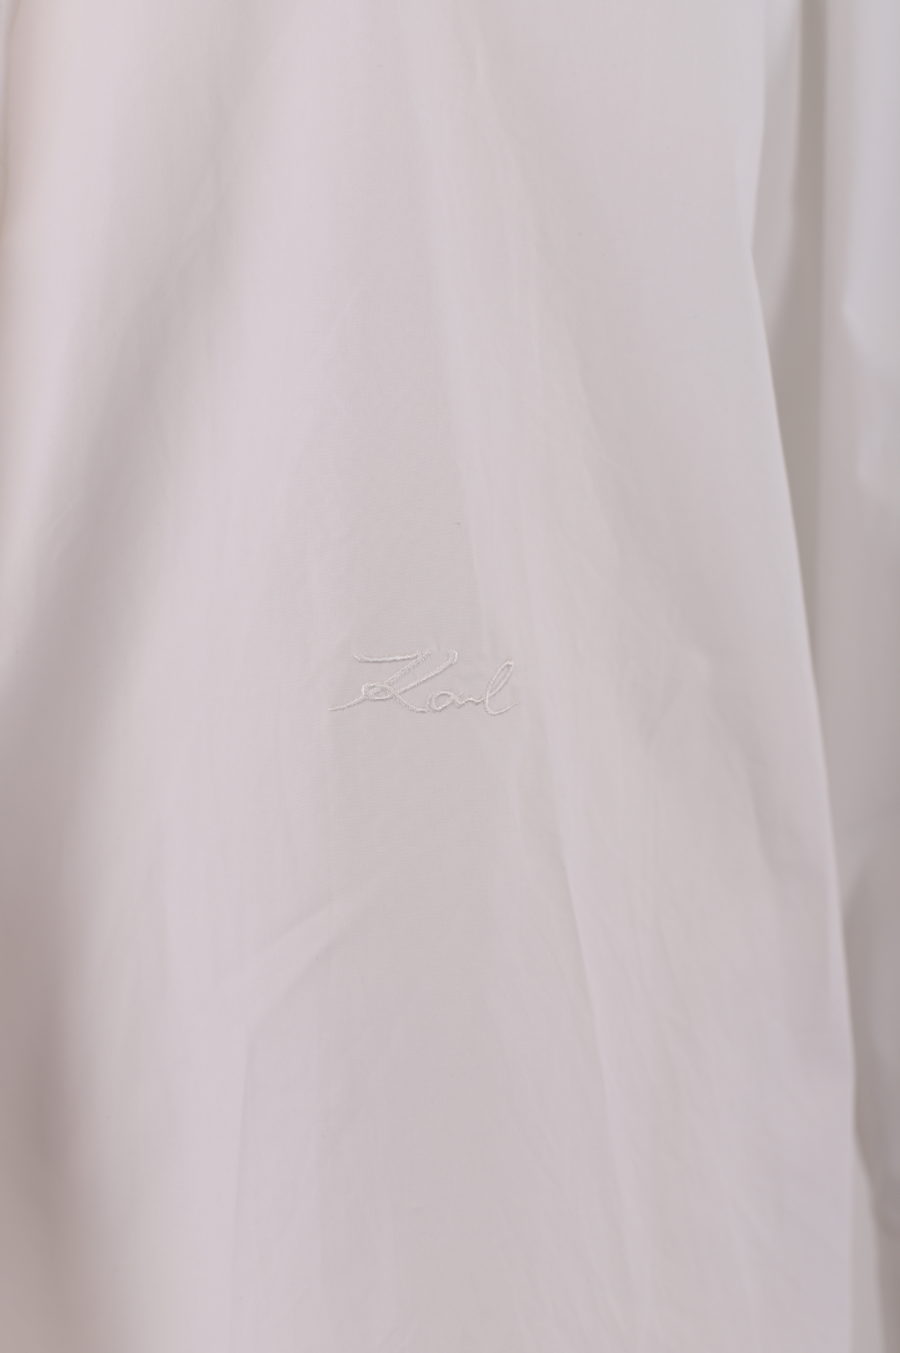 Camisa larga blanca con logotipo de cristales detrás - 08070f01c2b75859fb9e596d148954f5695bfc6a